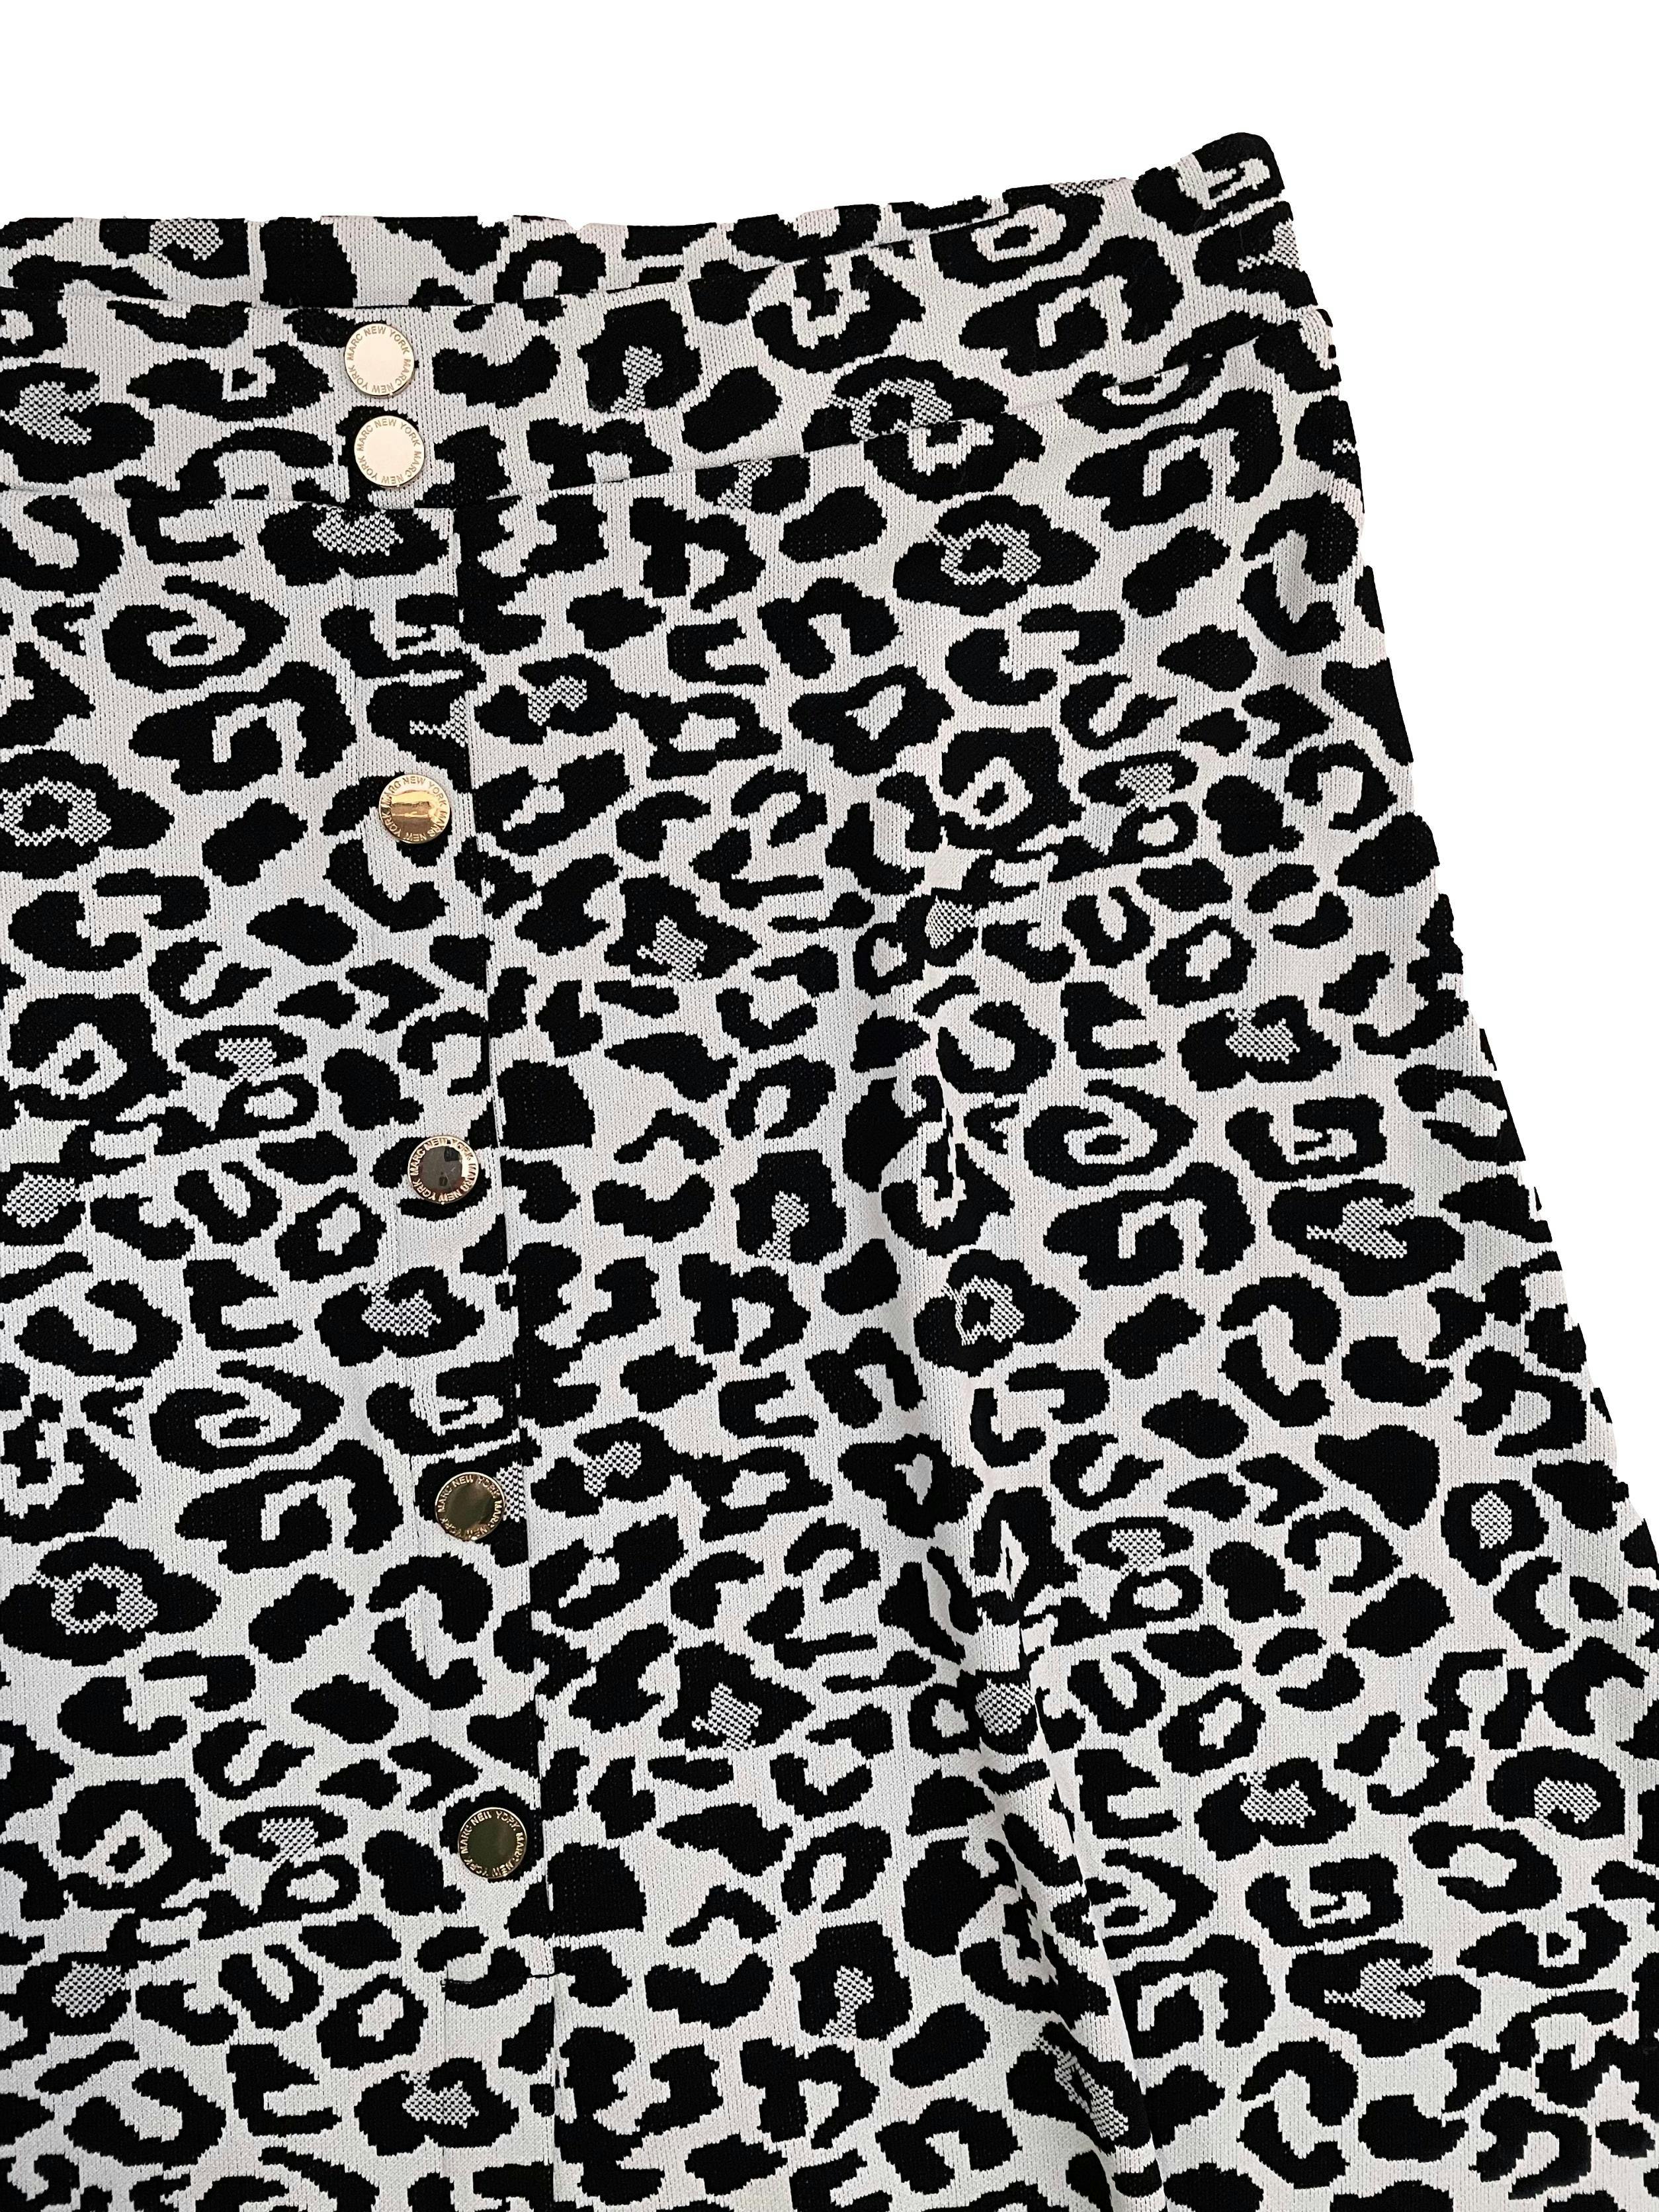 Falda midi Marc New York de punto animal print blanco y negro, botones metálicos dorados, pretina stretch. Cintura 98cm Largo 80cm